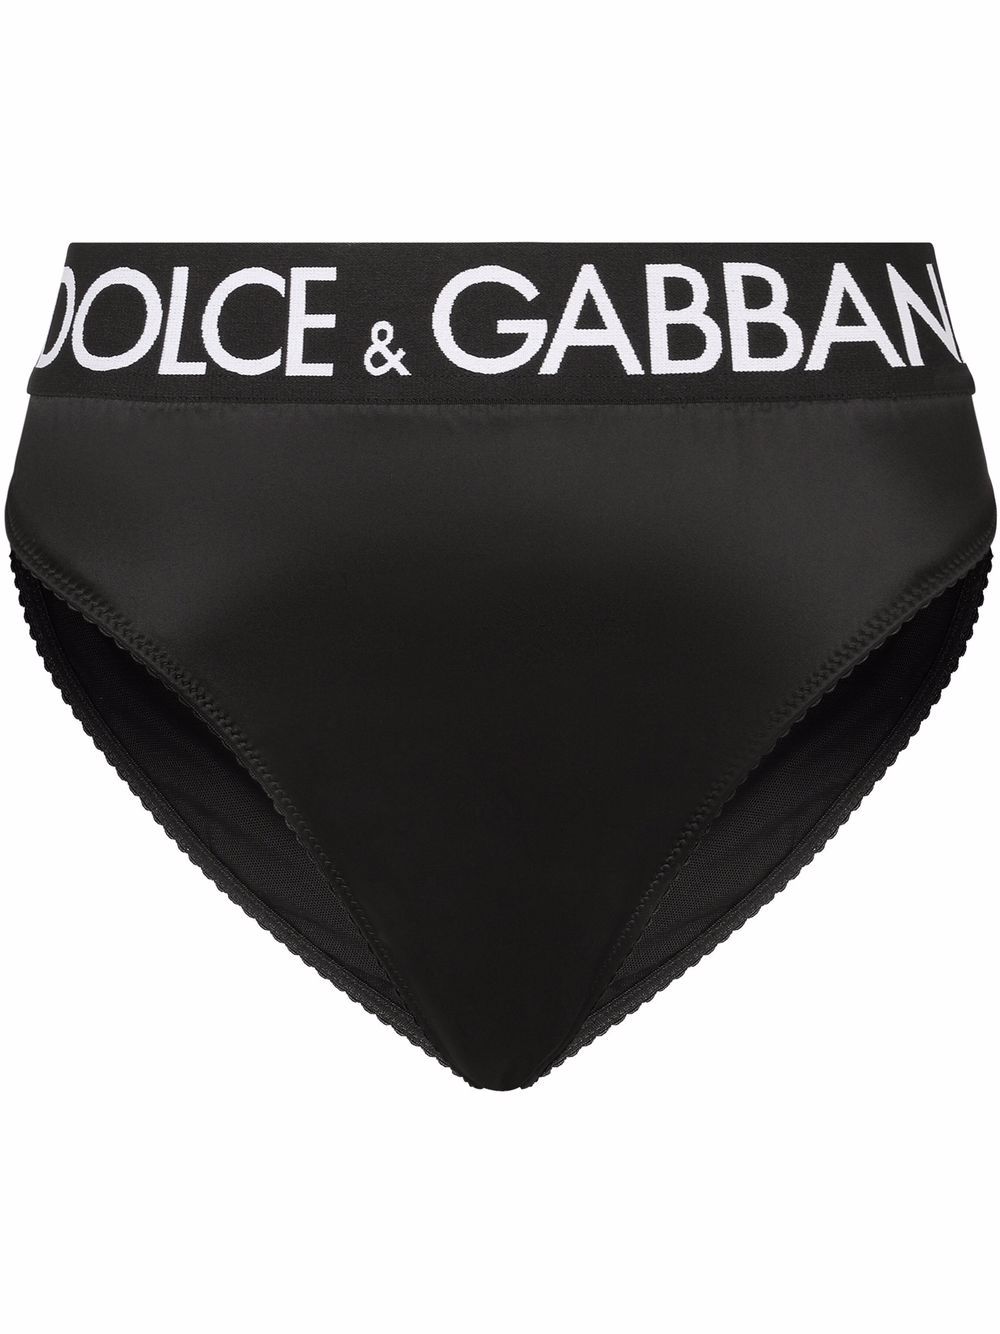 Dolce & Gabbana logo-waistband Satin Briefs - Farfetch